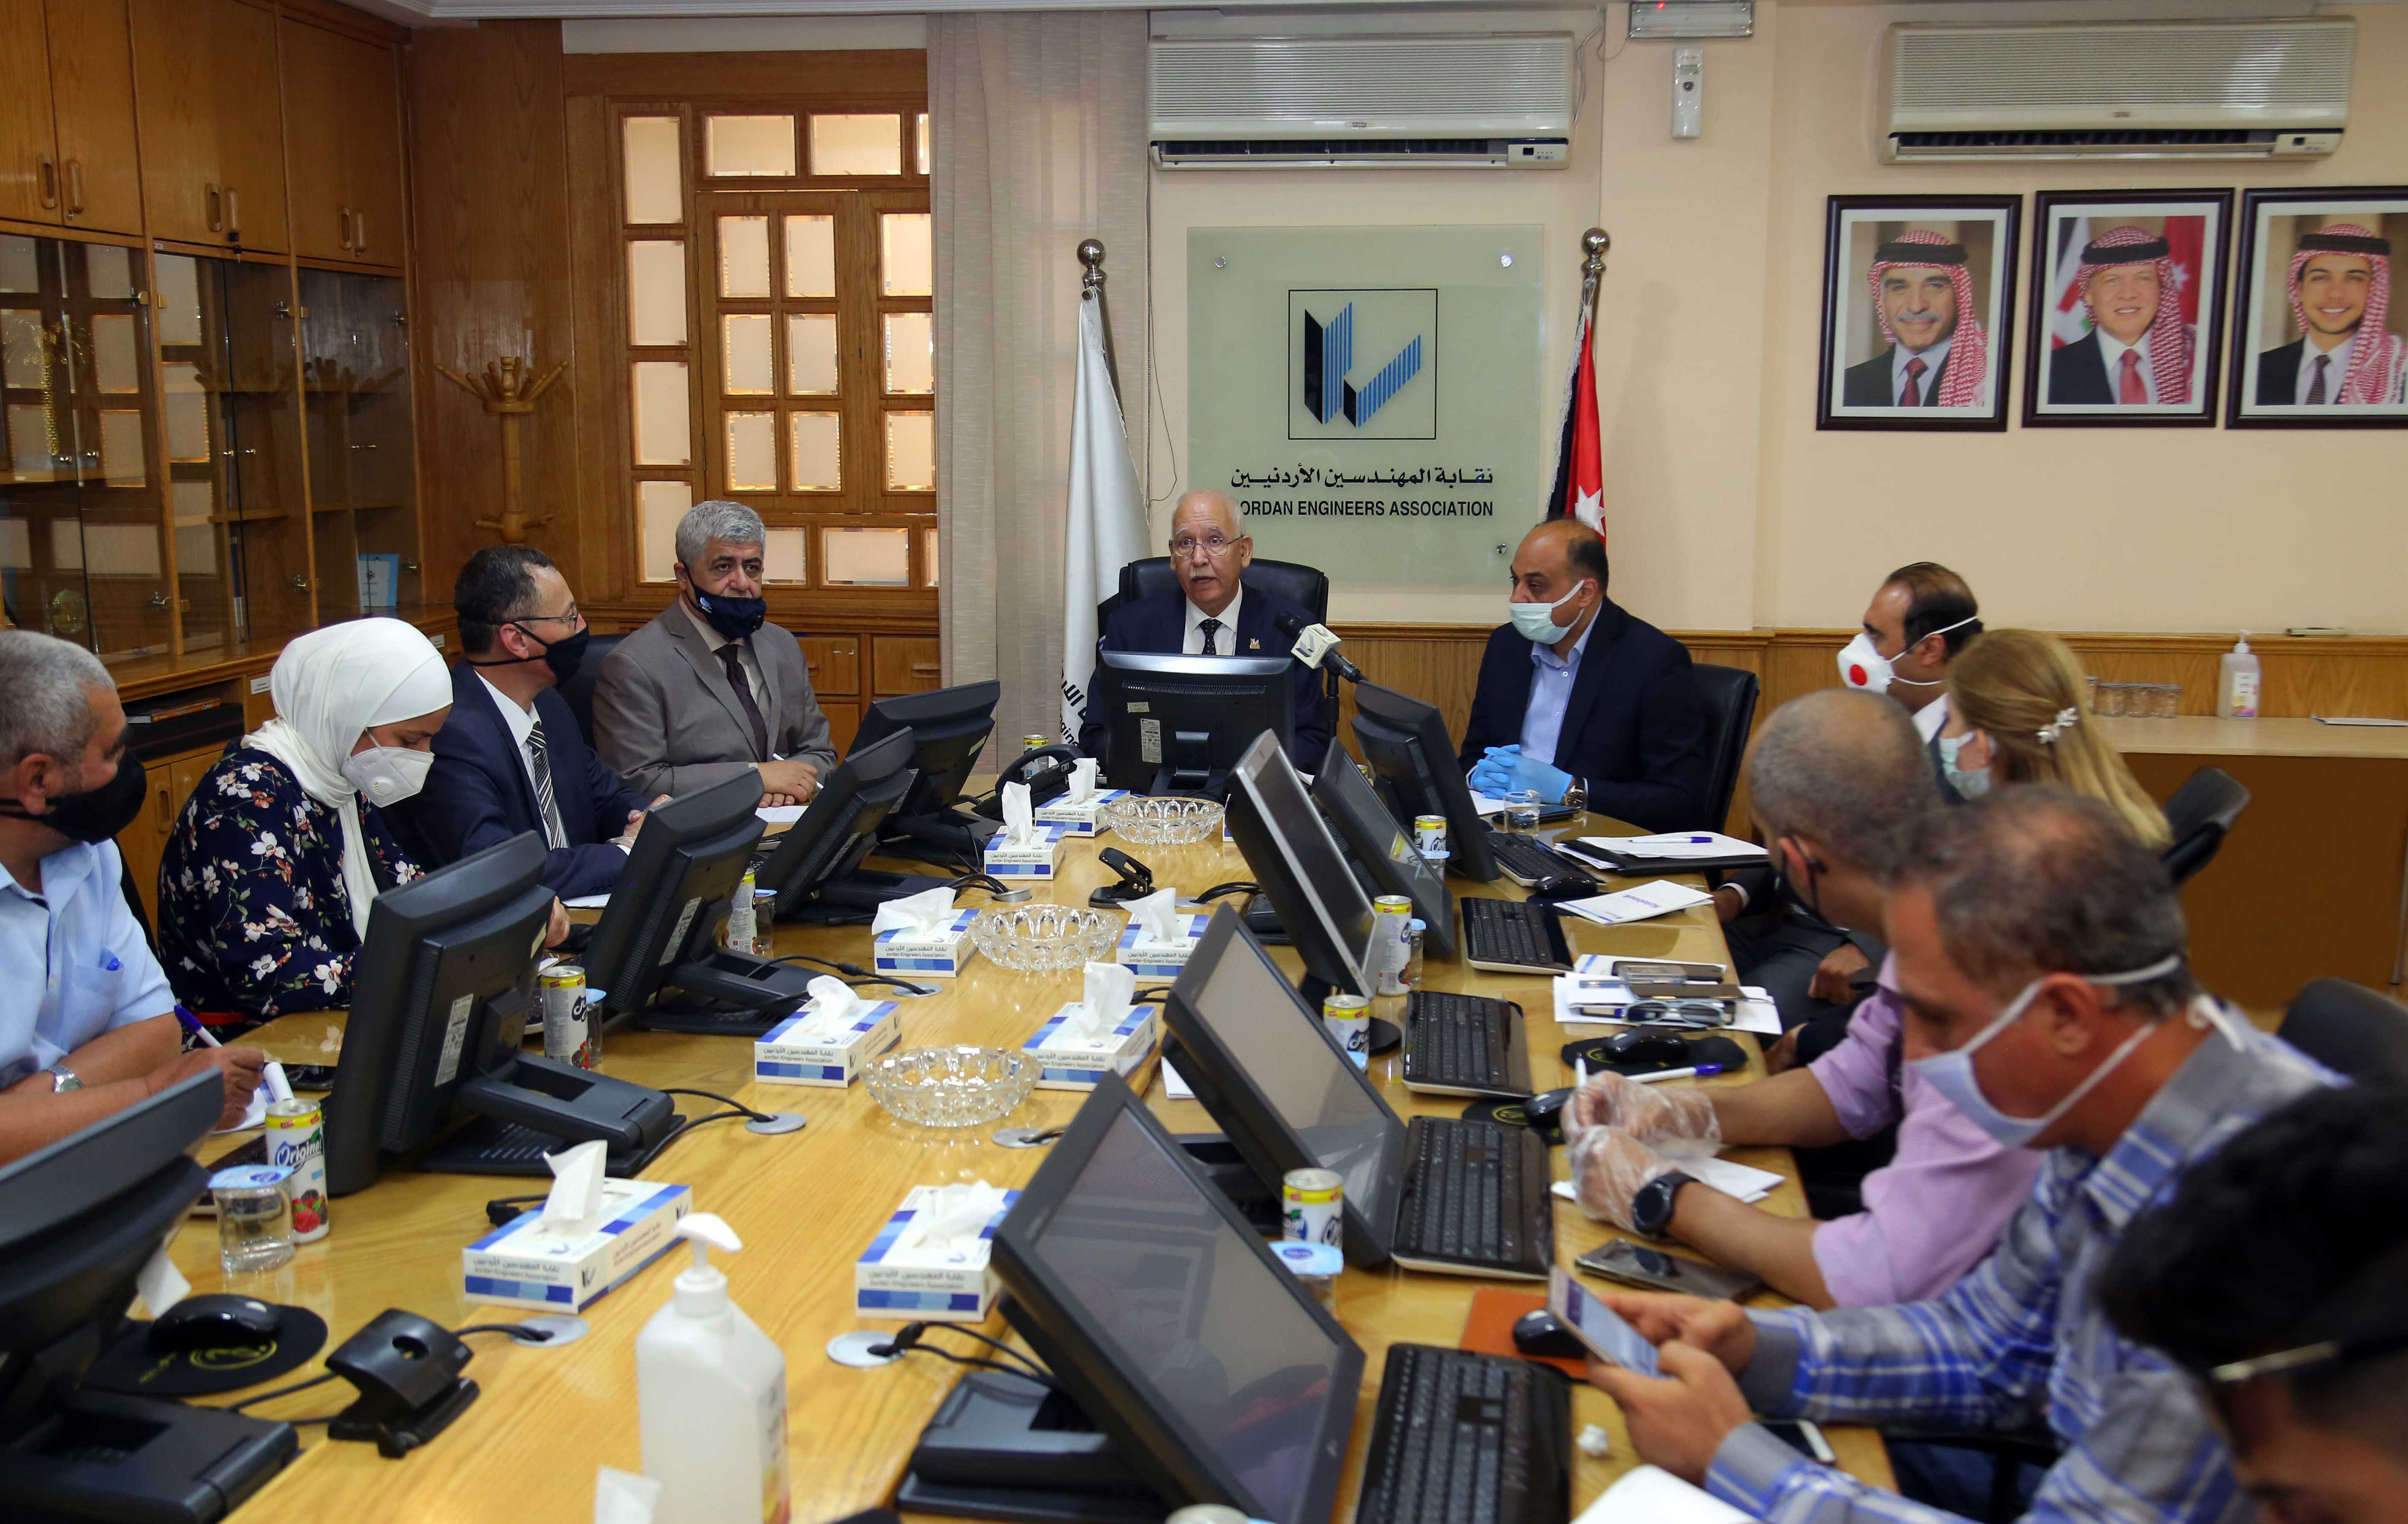 》المهندسين》 تعلن اشهار جمعية سلامة العمليات الكيميائية الأردنية